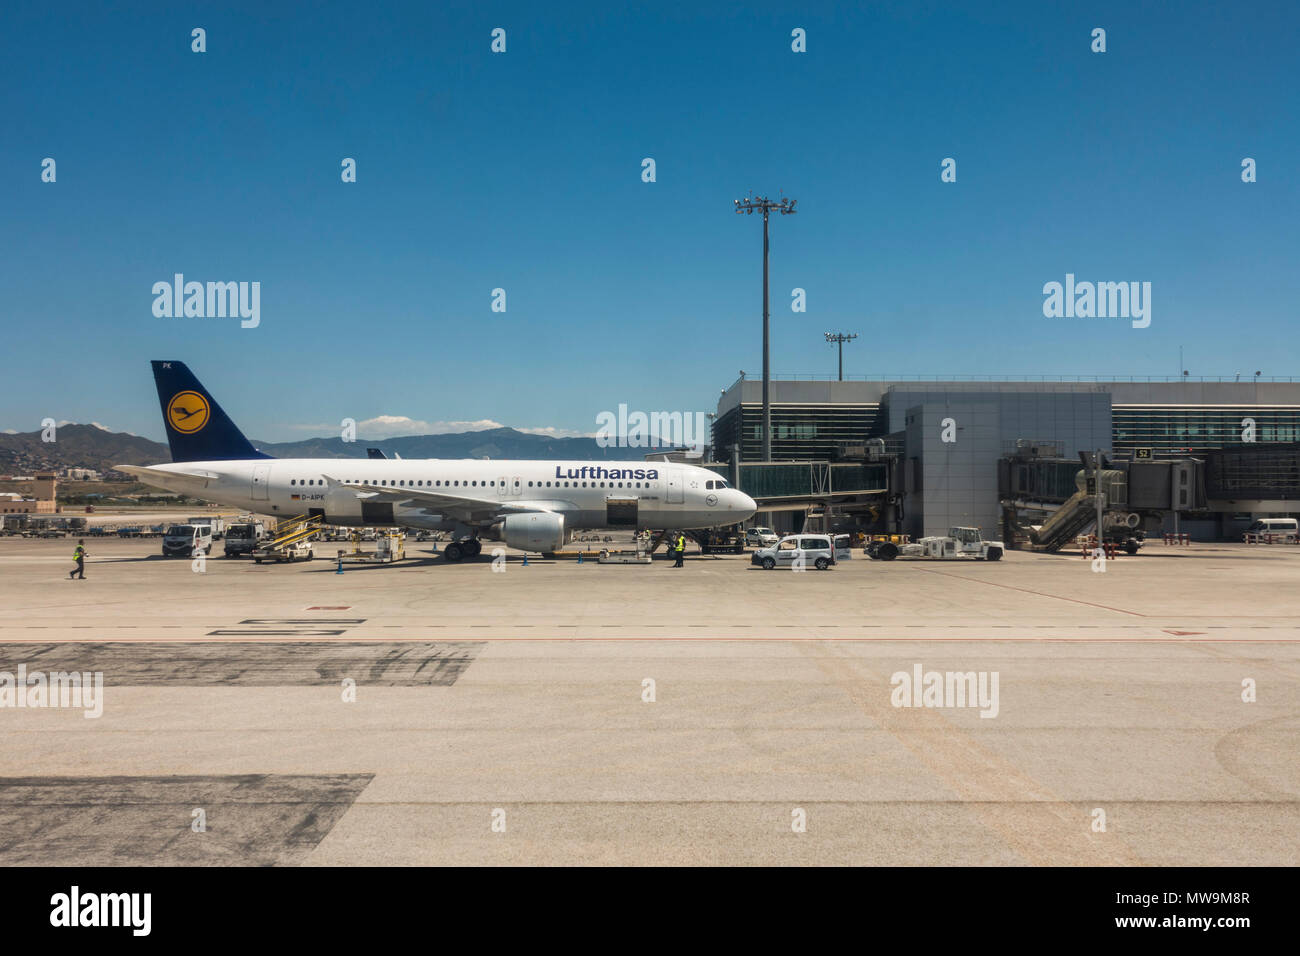 Lufthansa Aircraft at Airport of Malaga, Costa del Sol, Spain. Stock Photo